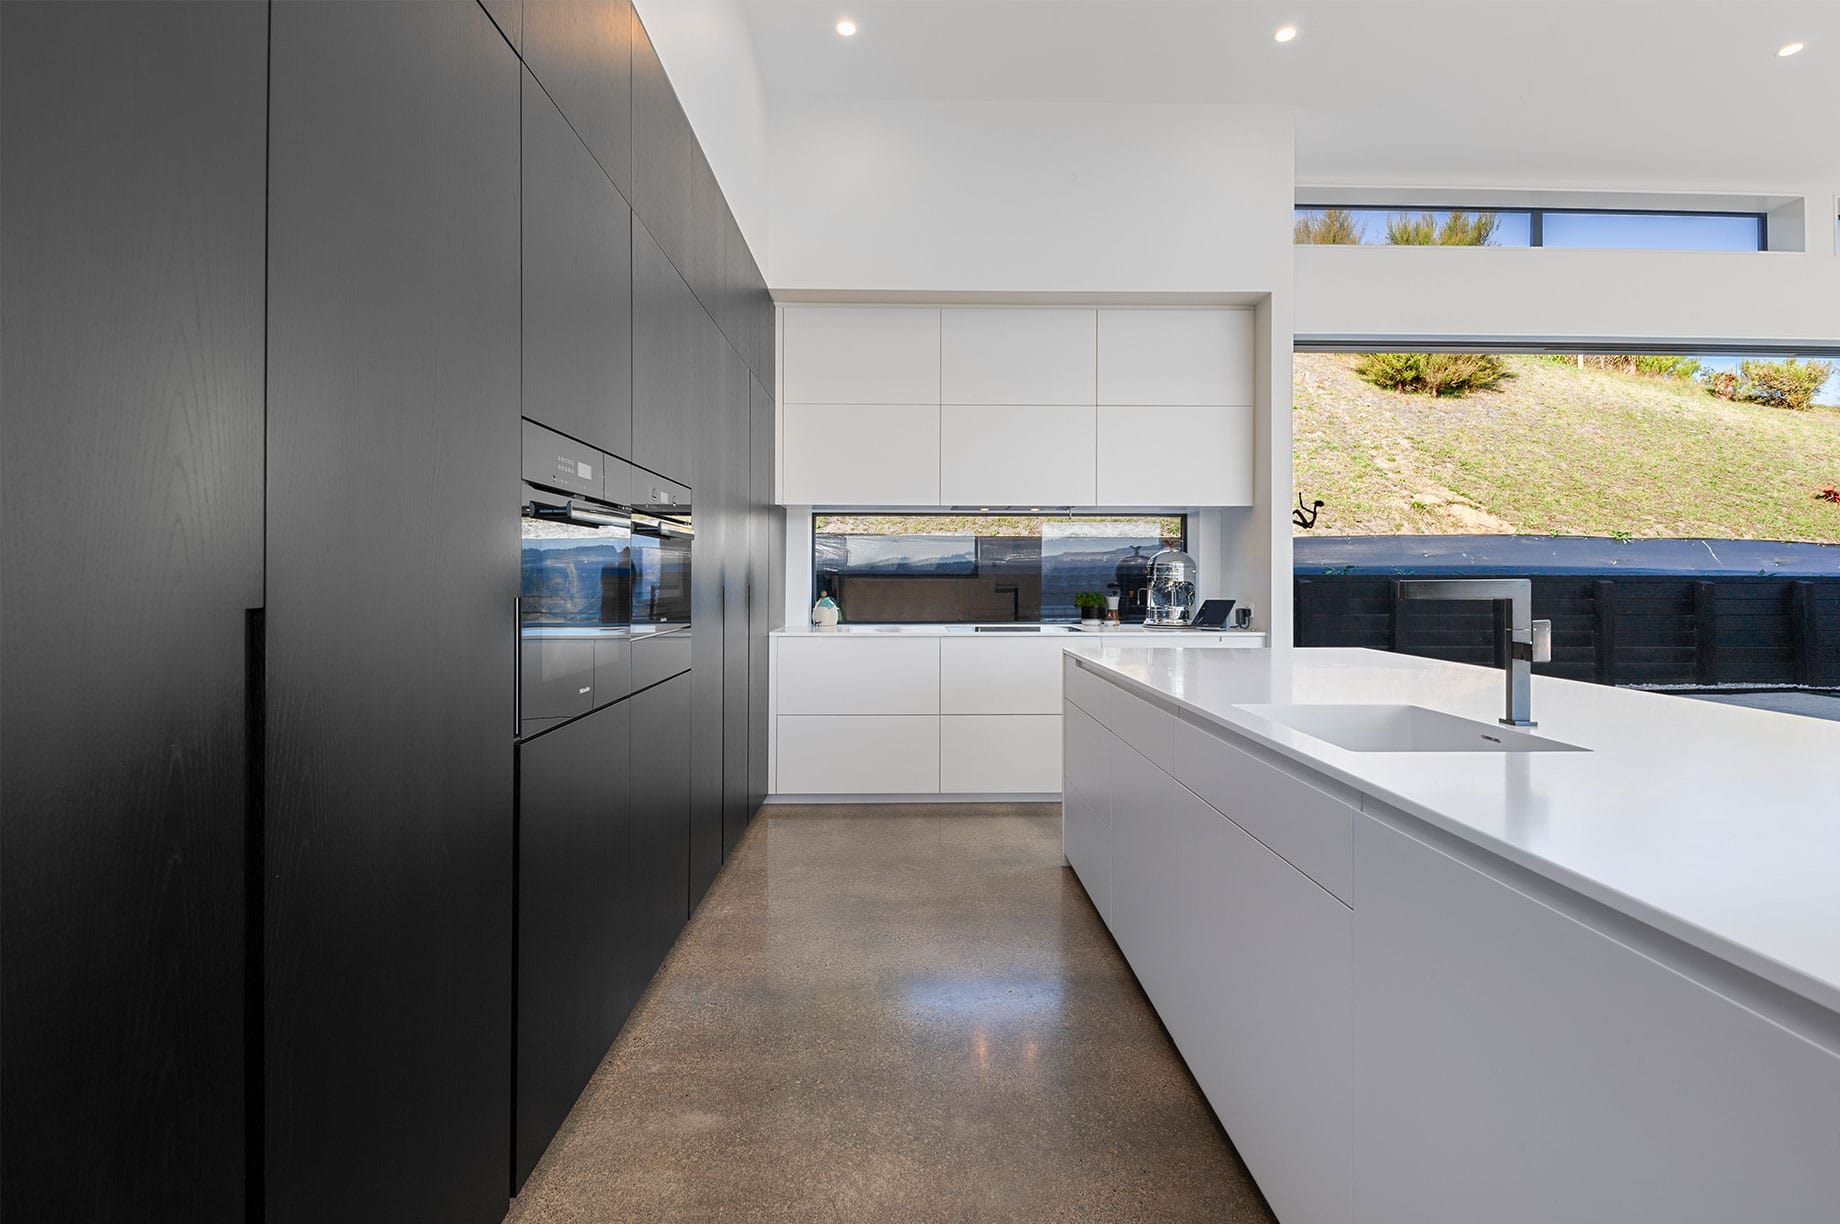 Slick white and black kitchen interior